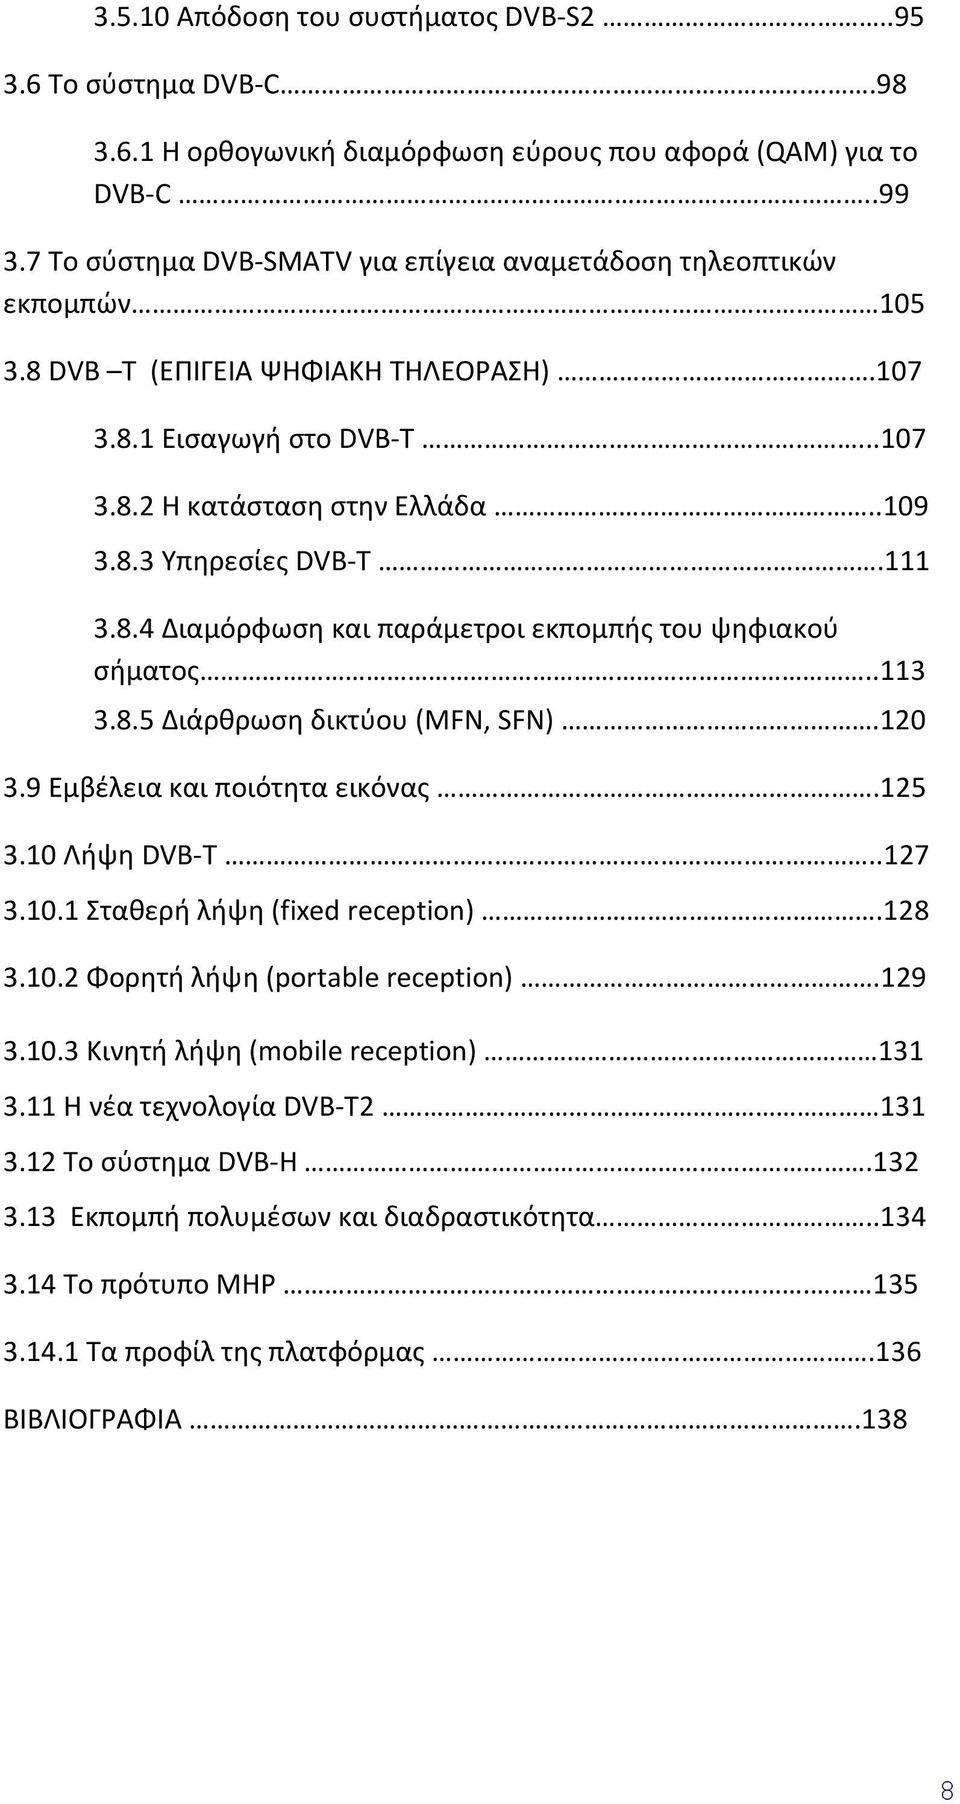 111 3.8.4 Διαμόρφωση και παράμετροι εκπομπής του ψηφιακού σήματος..113 3.8.5 Διάρθρωση δικτύου (MFN, SFN).120 3.9 Εμβέλεια και ποιότητα εικόνας.125 3.10 Λήψη DVB-T..127 3.10.1 Σταθερή λήψη (fixed reception).